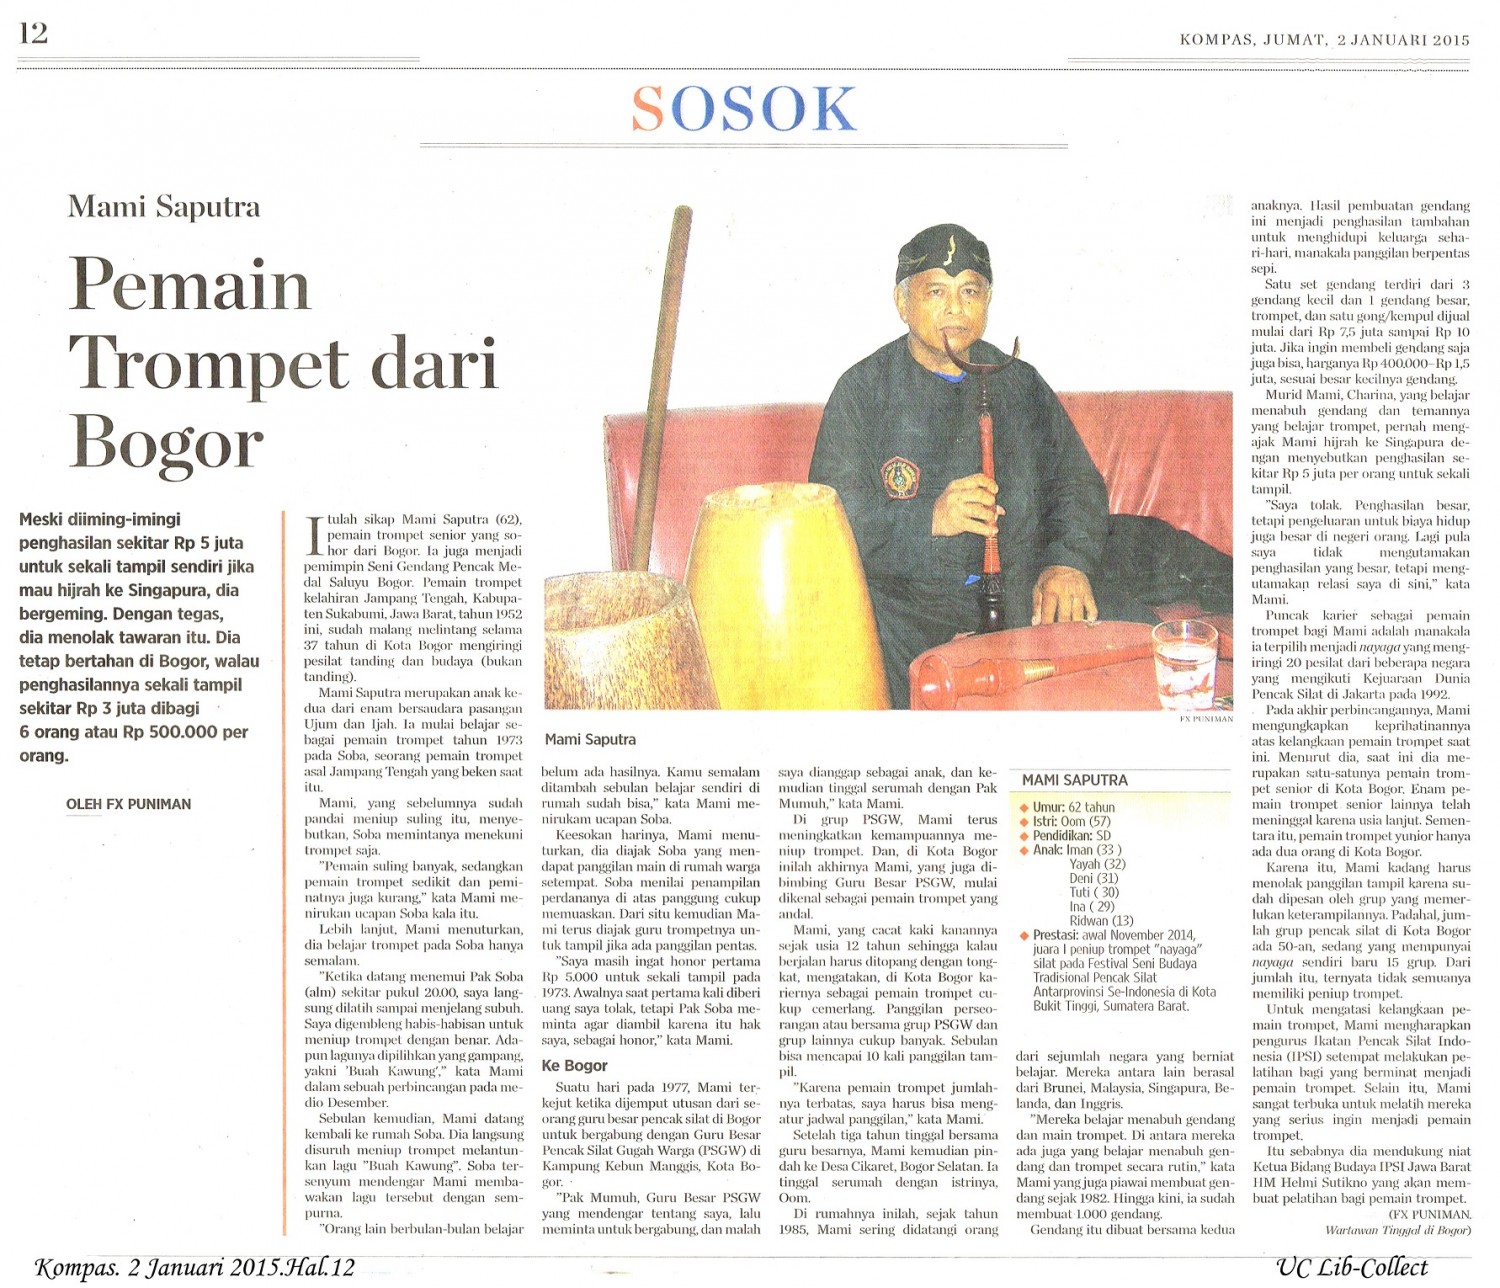 Pemain Trompet dari Bogor. Kompas. 2 Januari 2015.Hal.12